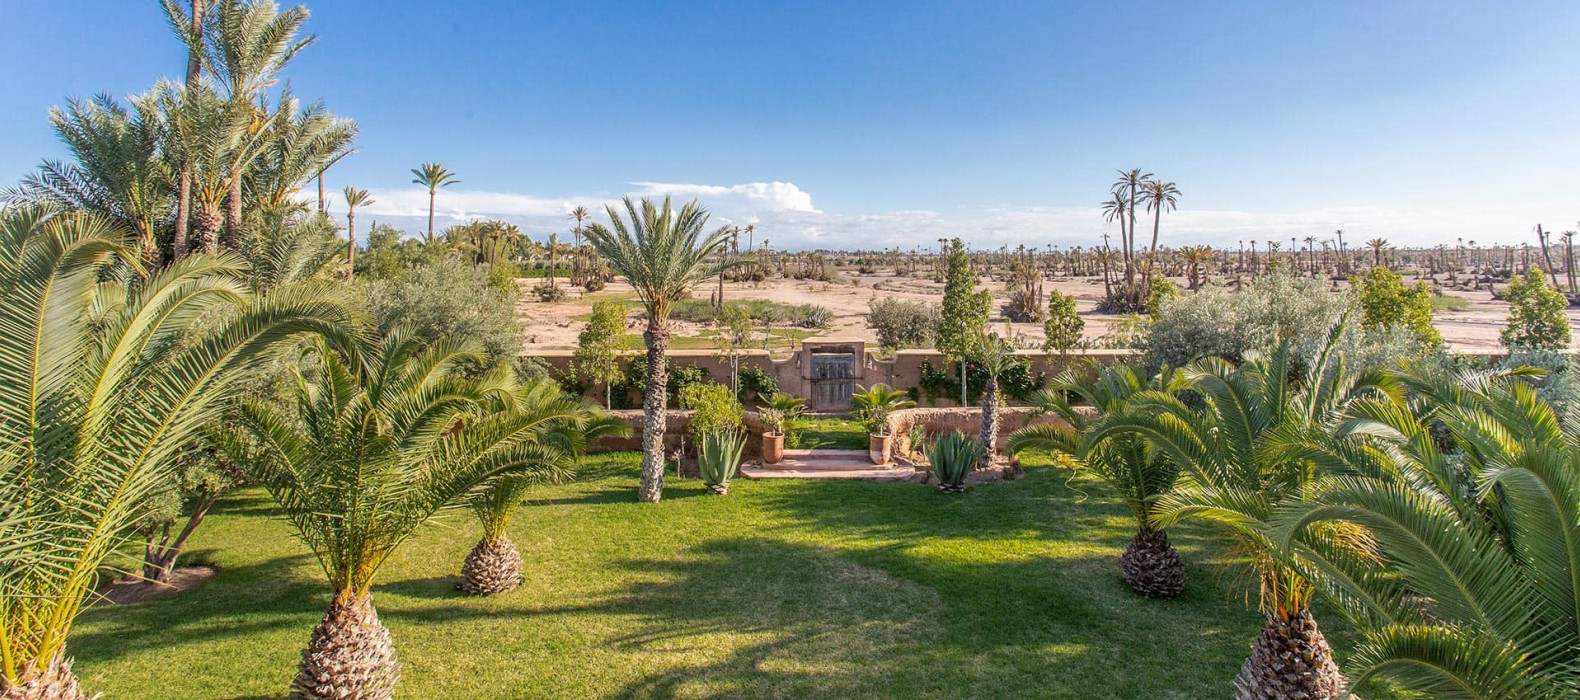 Landscape view of Villa Gardien du Ciel in Marrakech